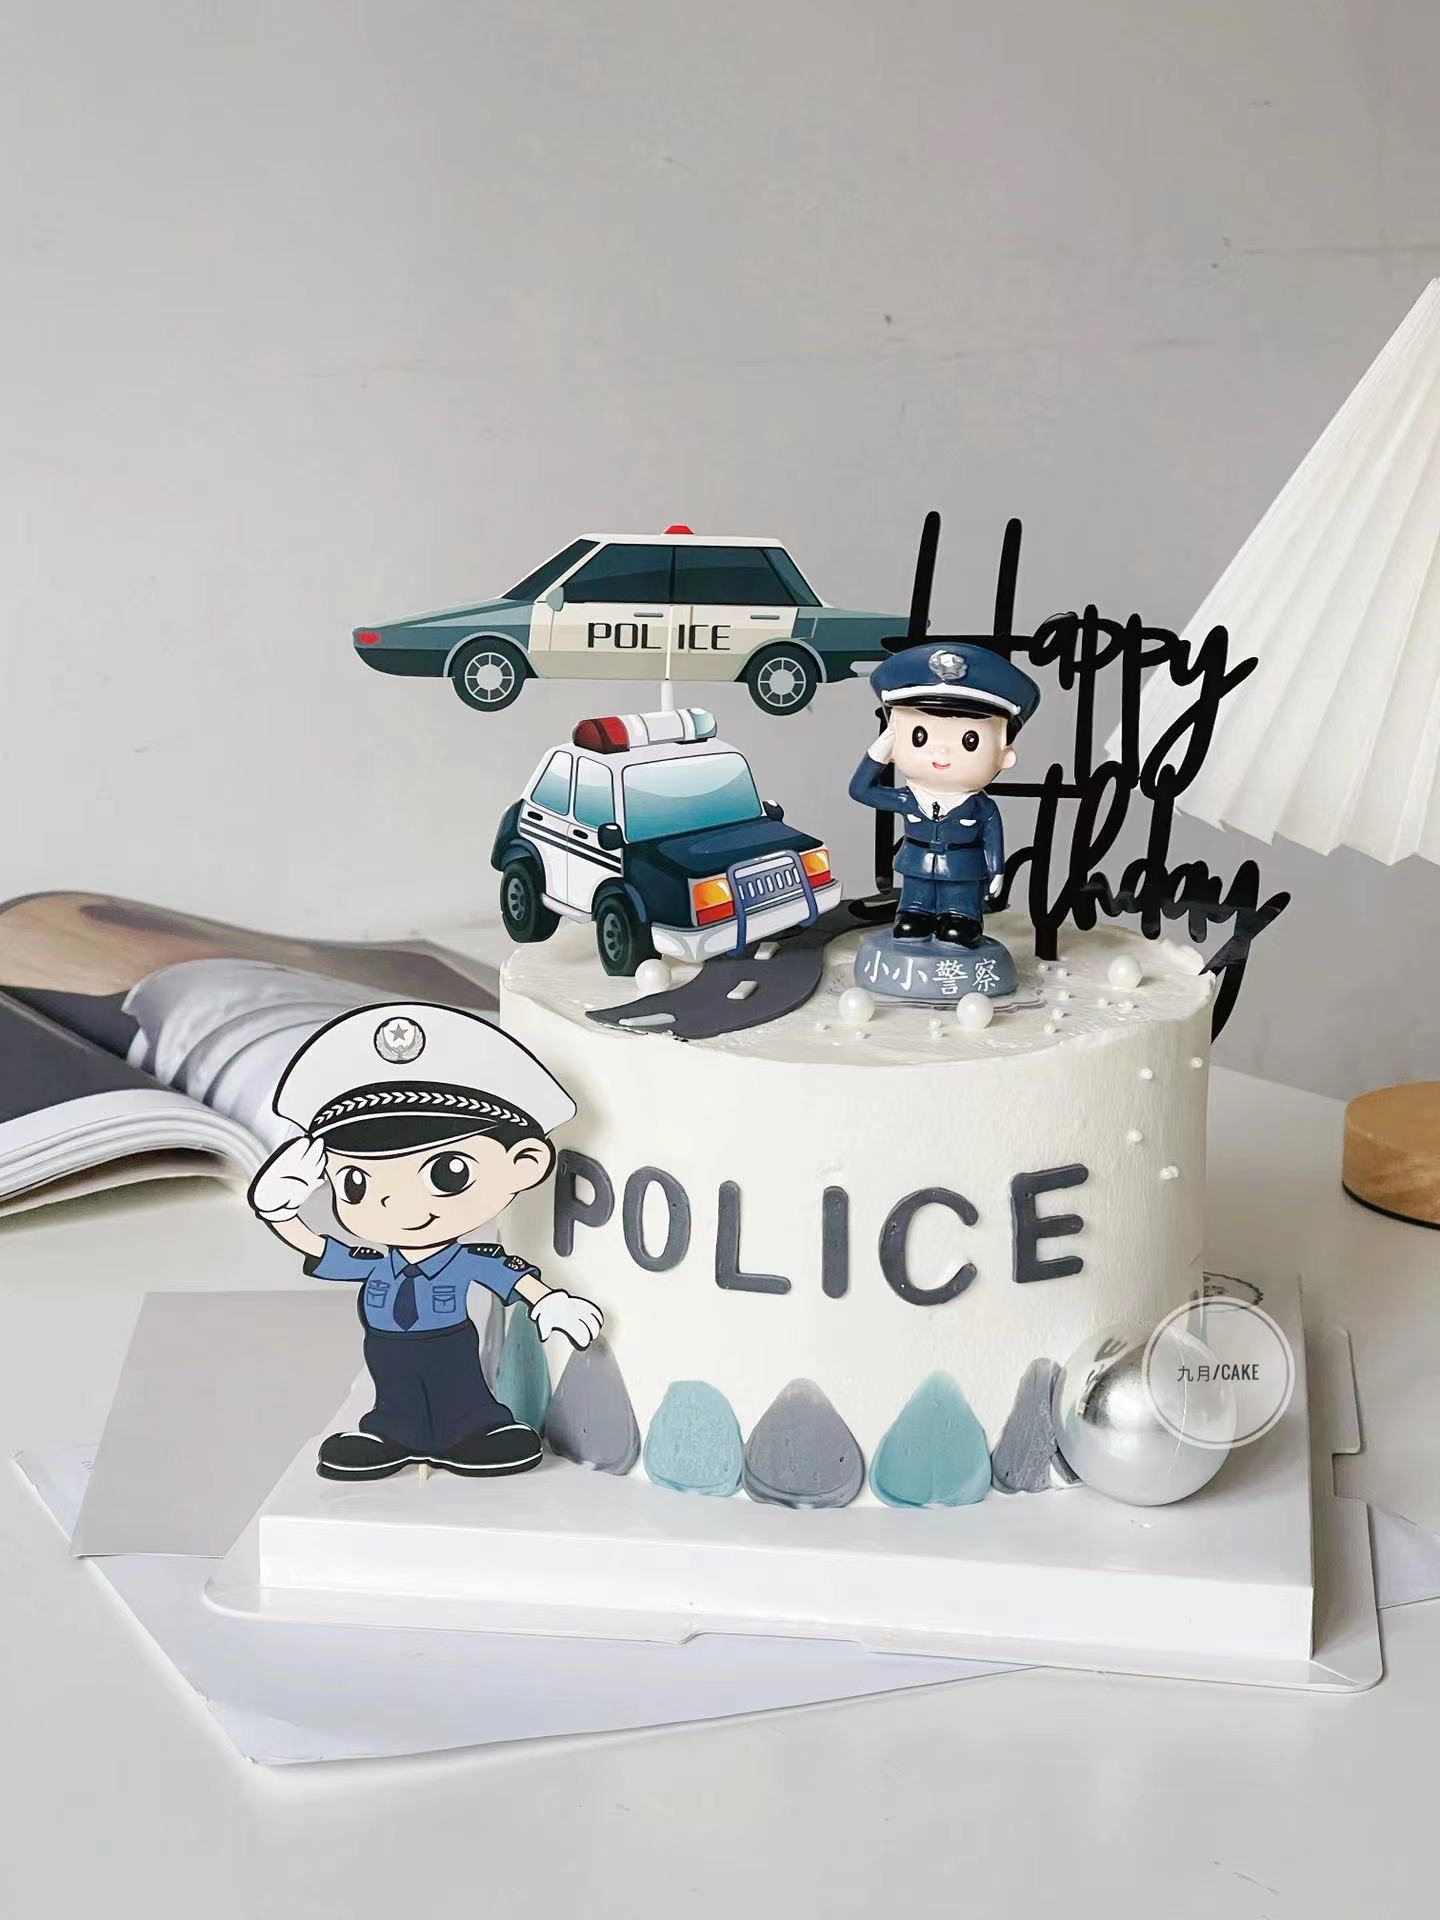 警察蛋糕装饰 小小警察警车制服飞机男孩生日蛋糕摆件插牌插件